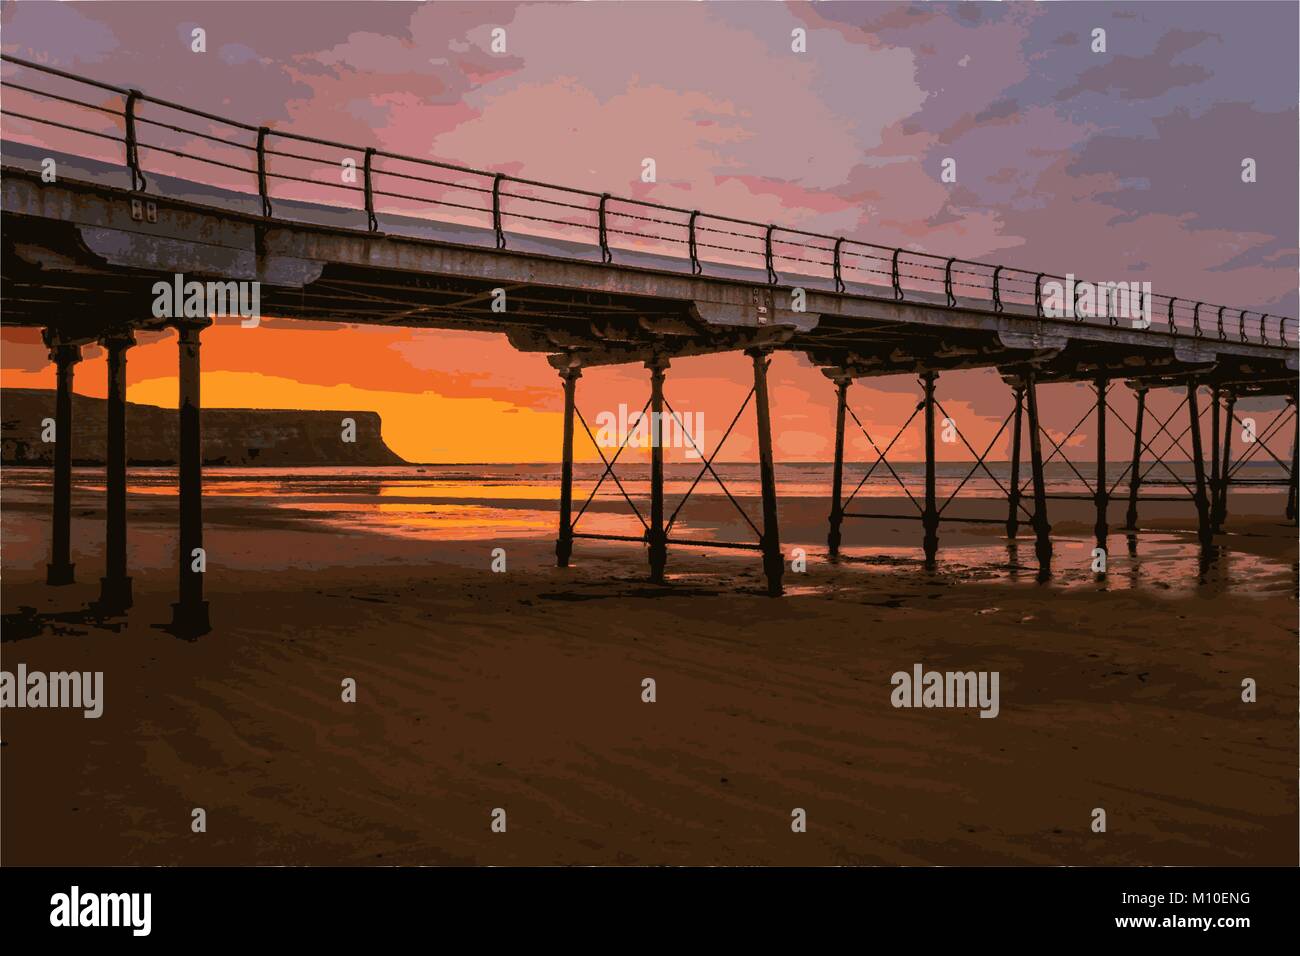 Pont sur plage avec le coucher du soleil Illustration de Vecteur